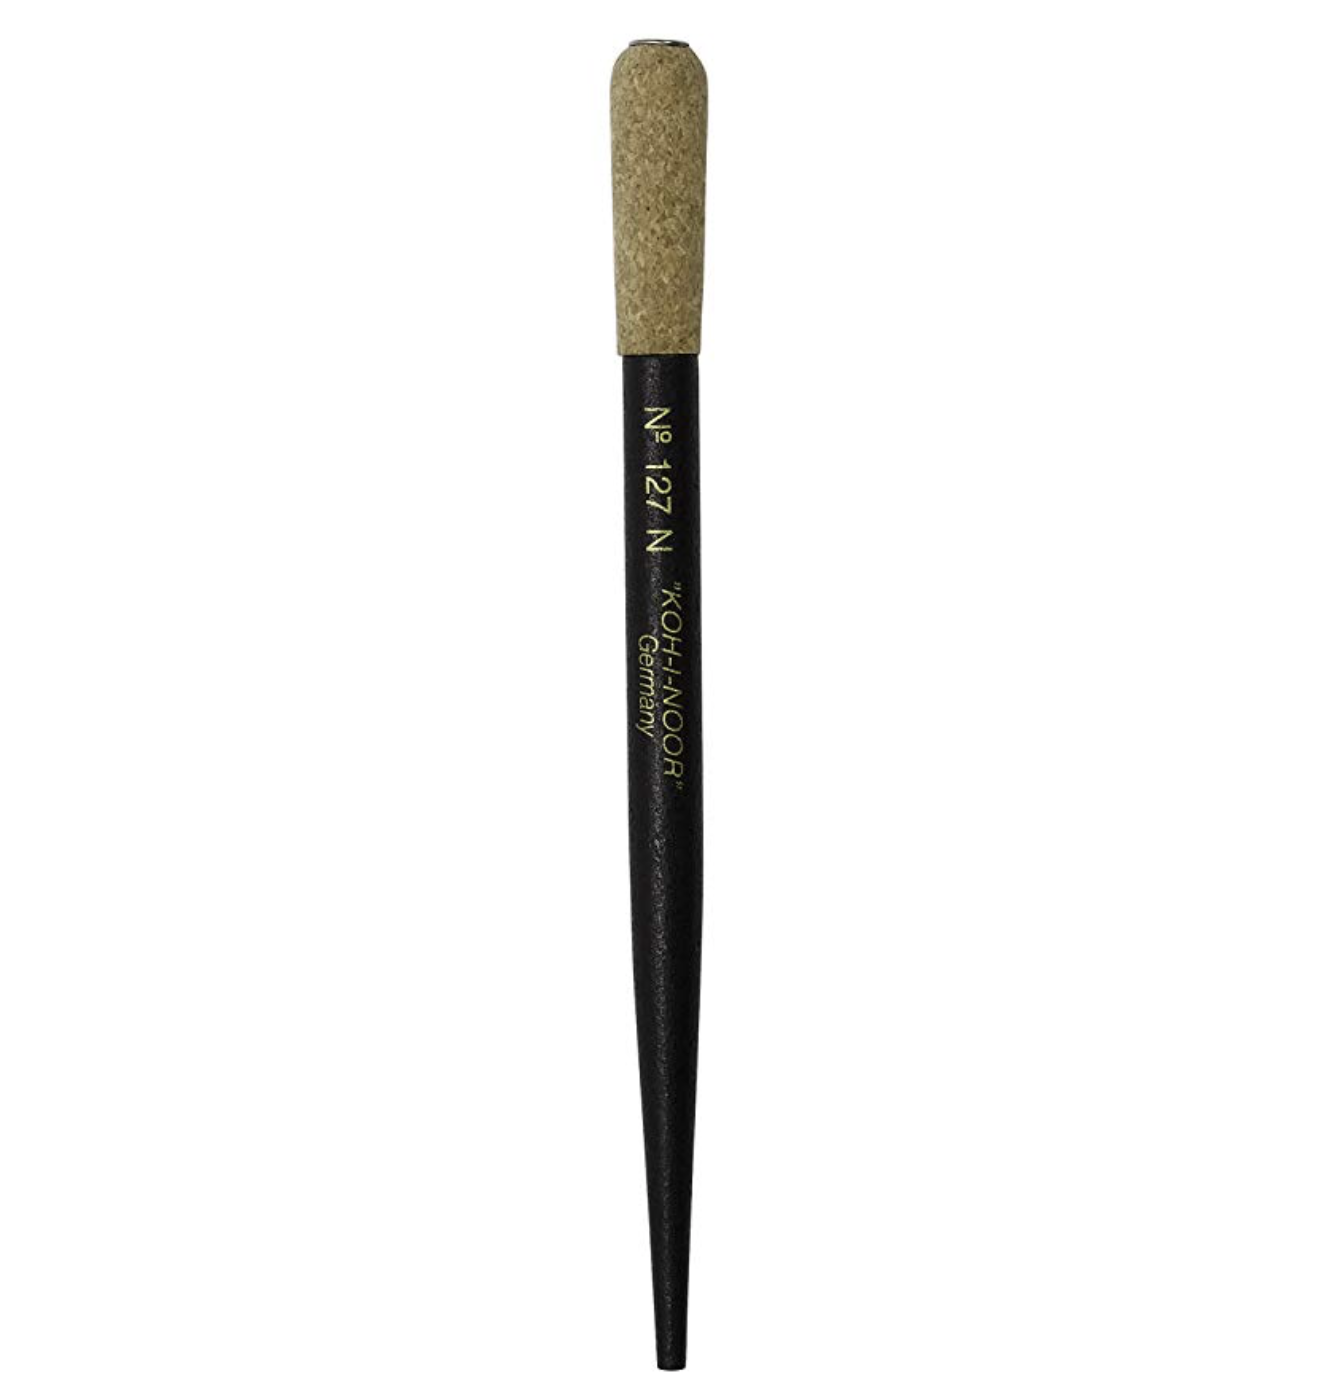 Koh-I-Noor Wooden Pen Holder with Cork Grip